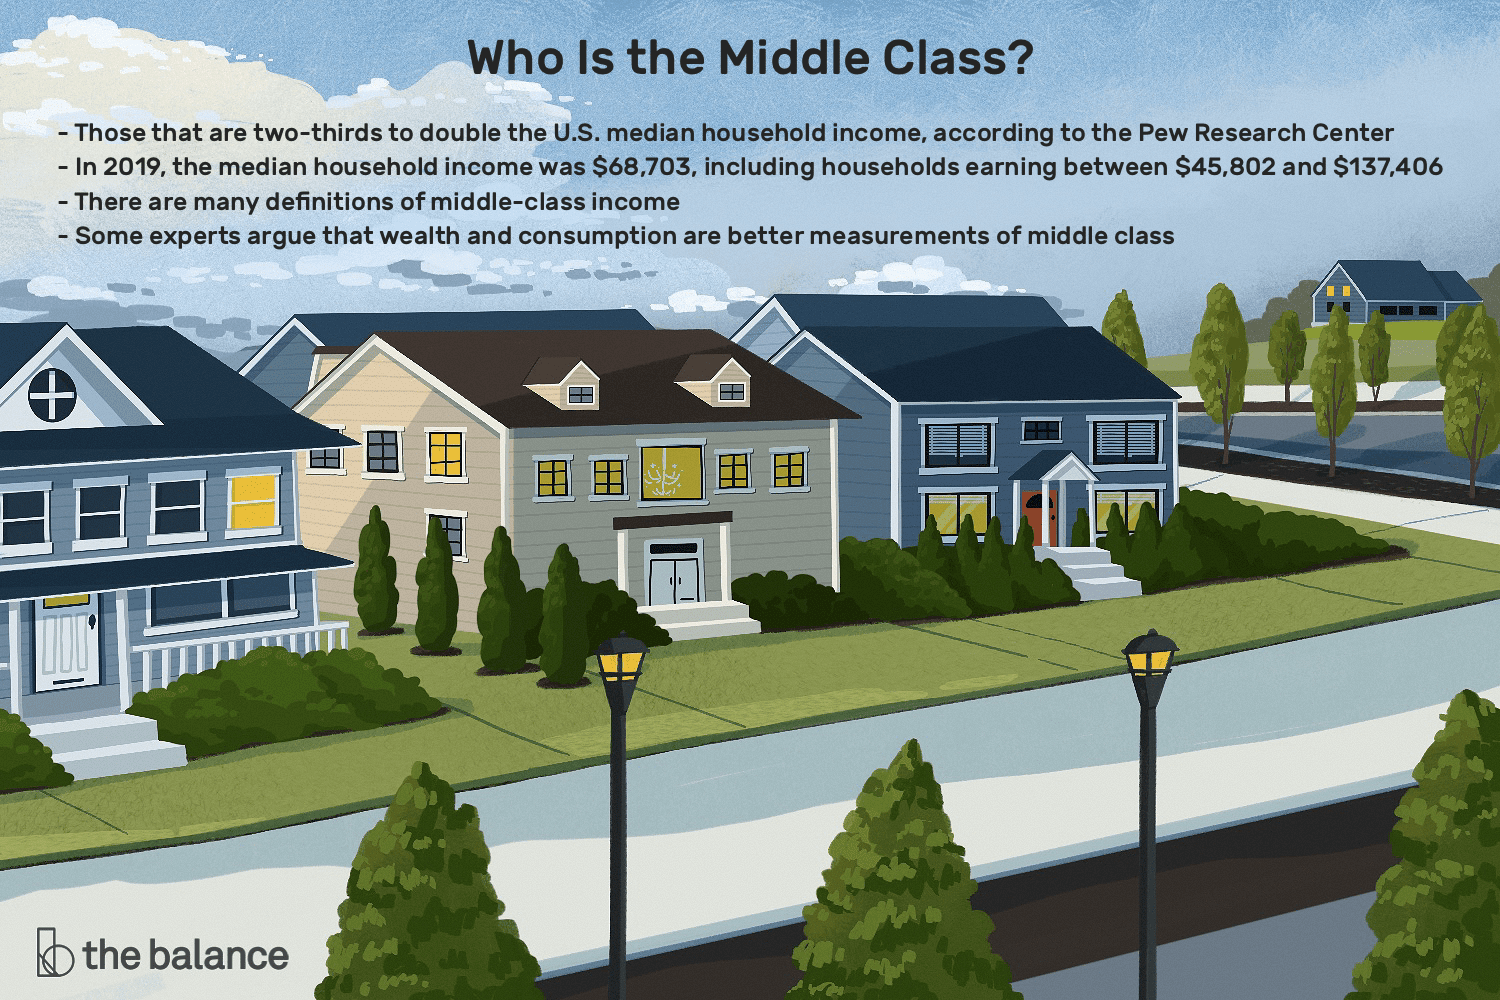 一个小区的房子的插图代表了谁是中产阶级?皮尤研究中心(Pew Research Center)的数据显示，这些人占美国家庭收入中位数的三分之二;2019年，家庭收入中位数为68,703美元，其中家庭收入在45,802美元至137,406美元之间;中产阶级收入有很多定义;一些专家认为，财富和消费是衡量中产阶级的更好标准